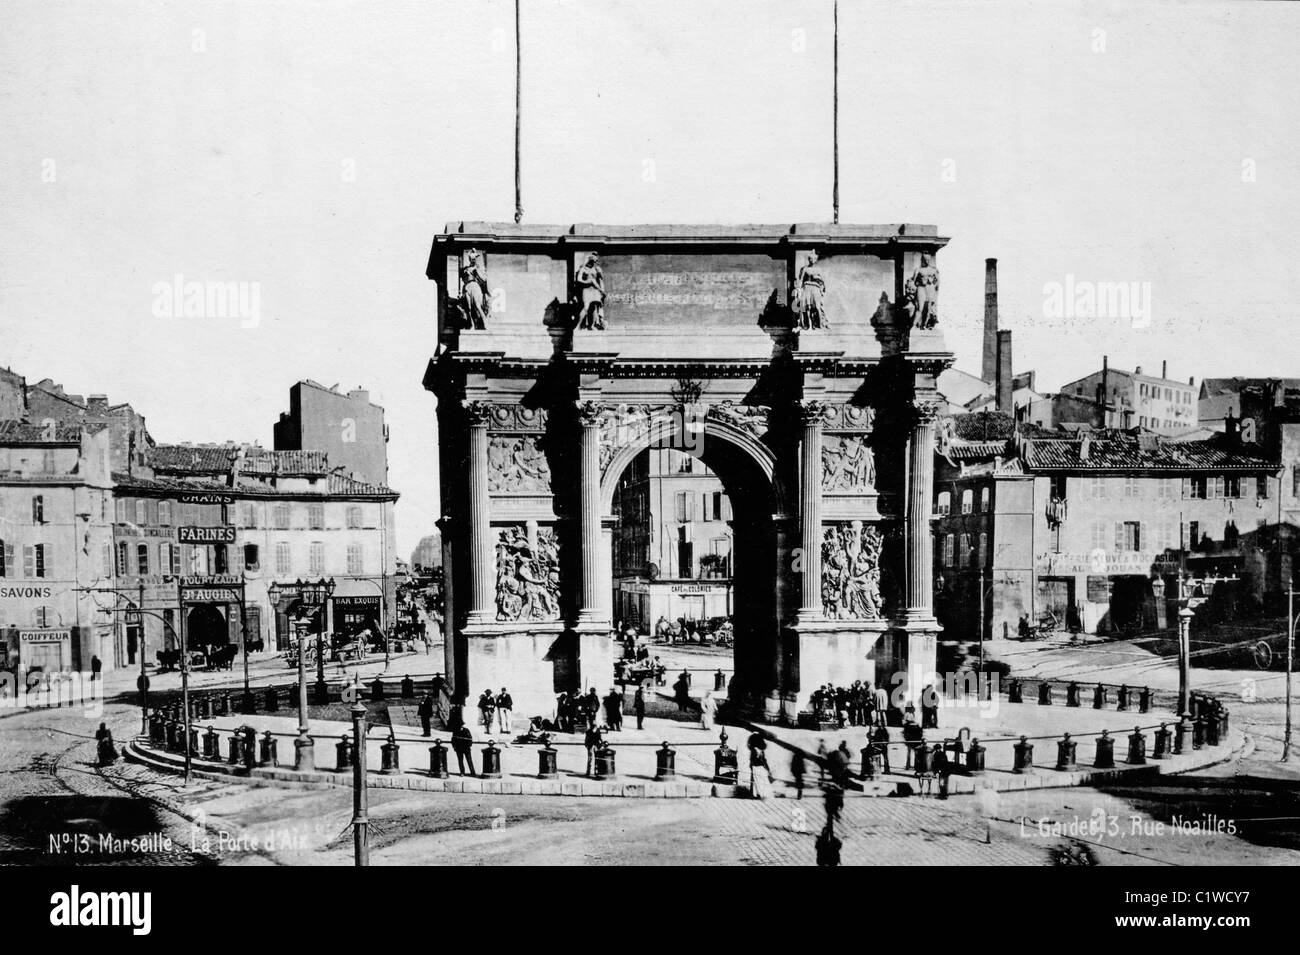 Marseille Porte d'Aix Arco di Trionfo o Monumento alla Vittoria, costruito nel 1823-1839 (fotografato nel 1900) Marsiglia o Marsiglia, Provenza, Francia Foto Stock